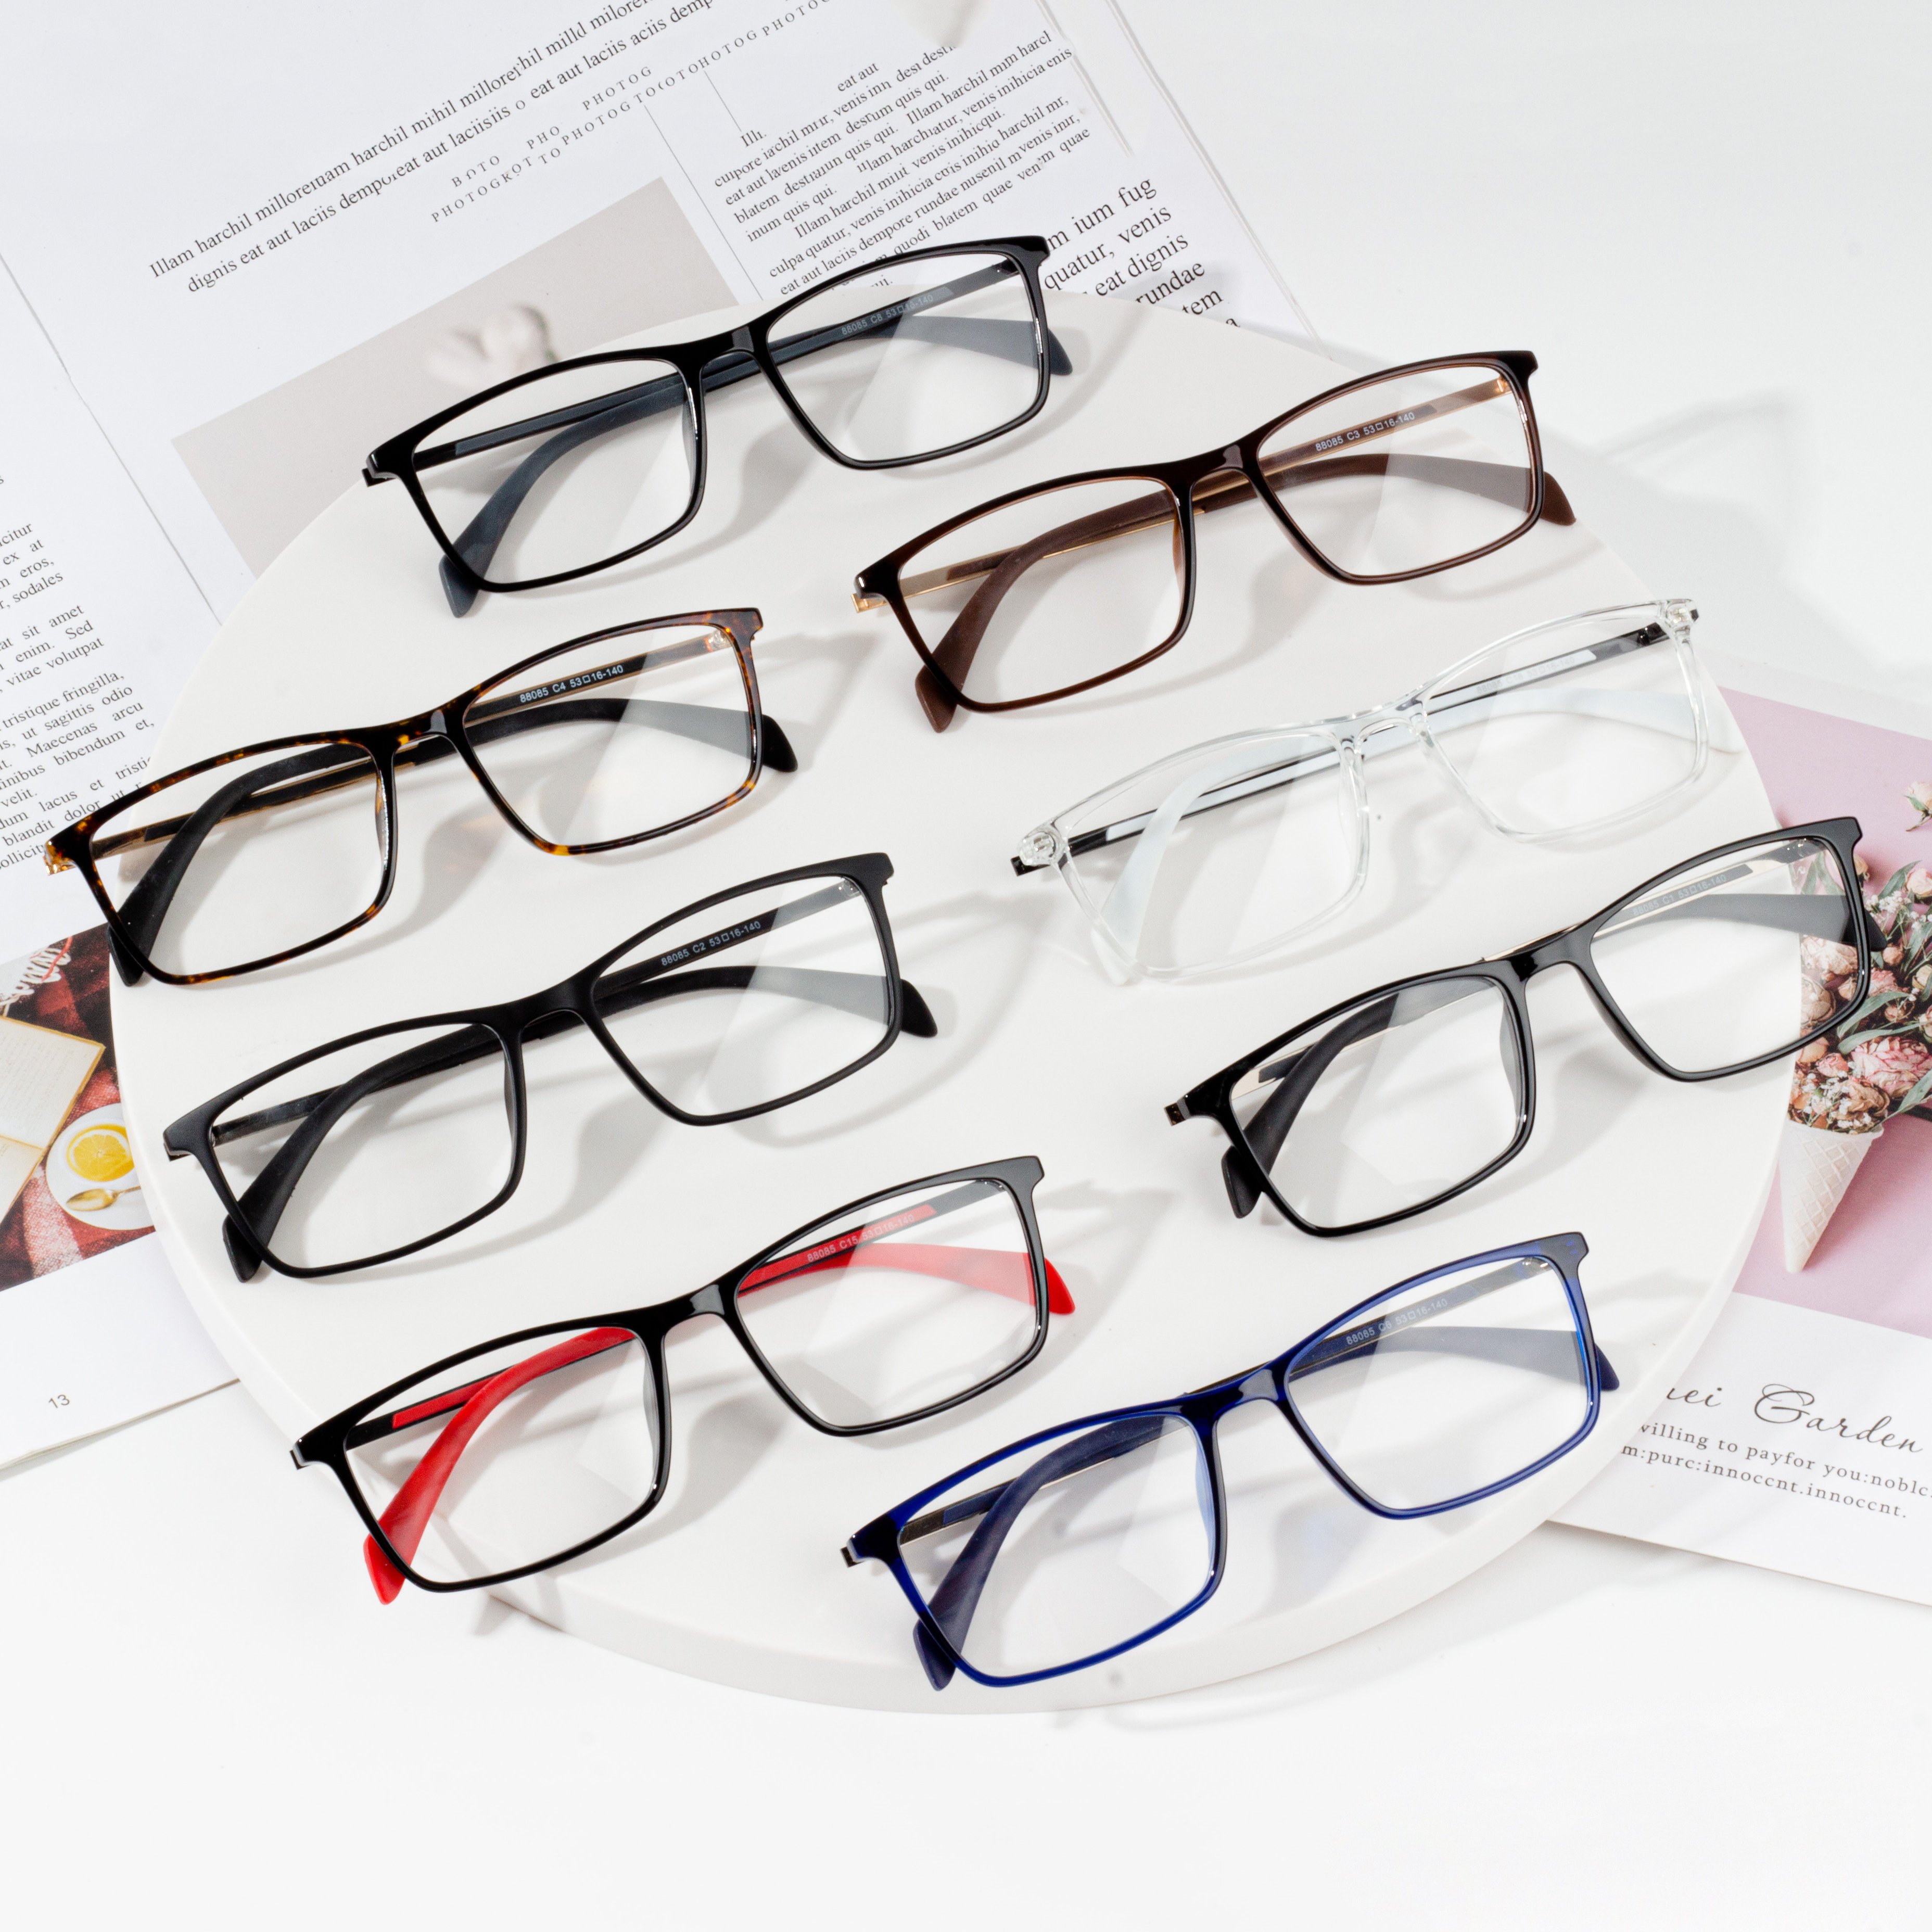 China Factory for Eyeglass Frame - China wholesale eyeglass frame optical – HJ EYEWEAR